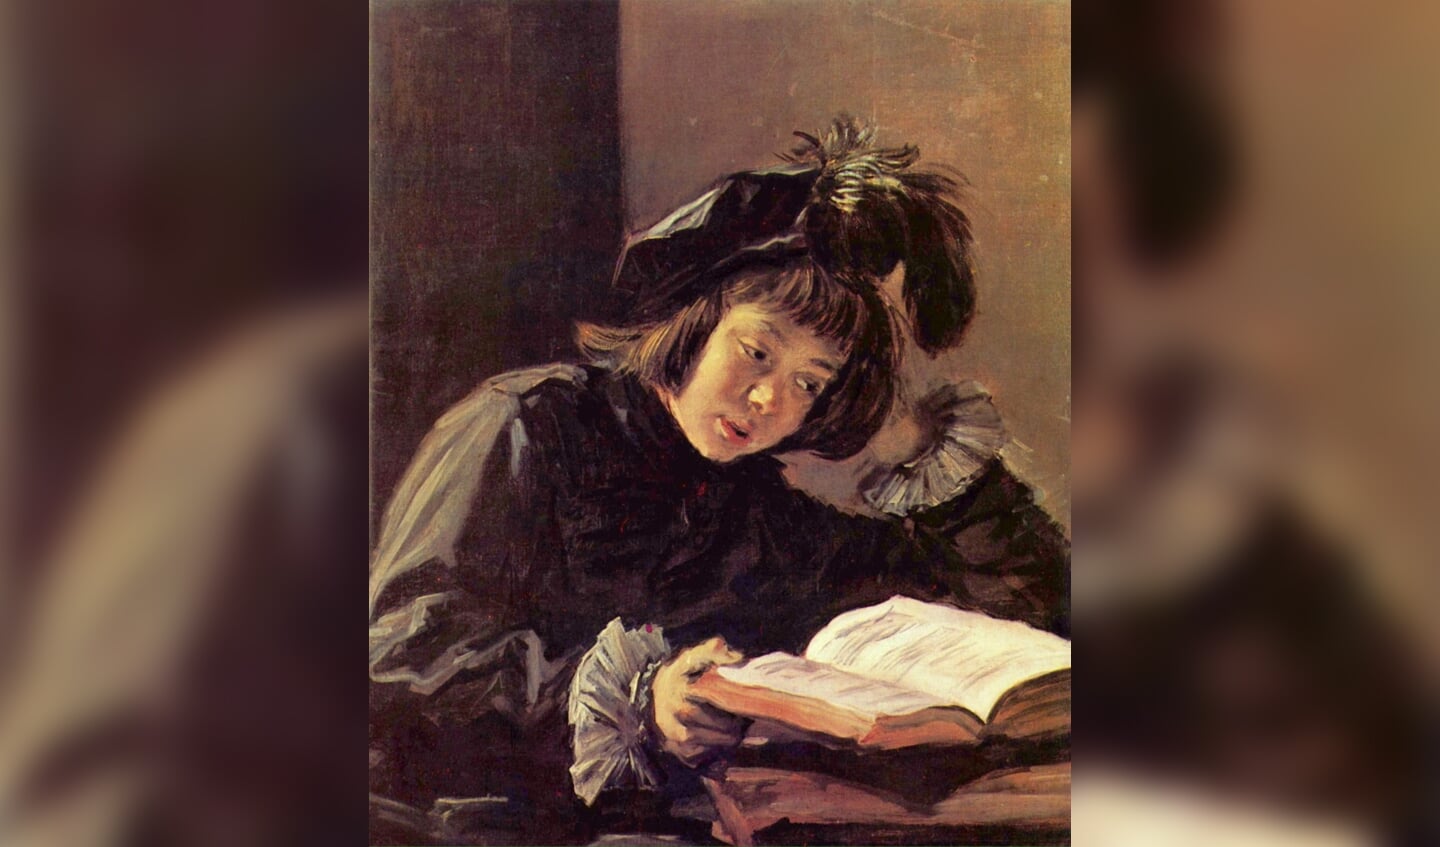 'Lezende jongen' van Frans Hals (1638-1640)